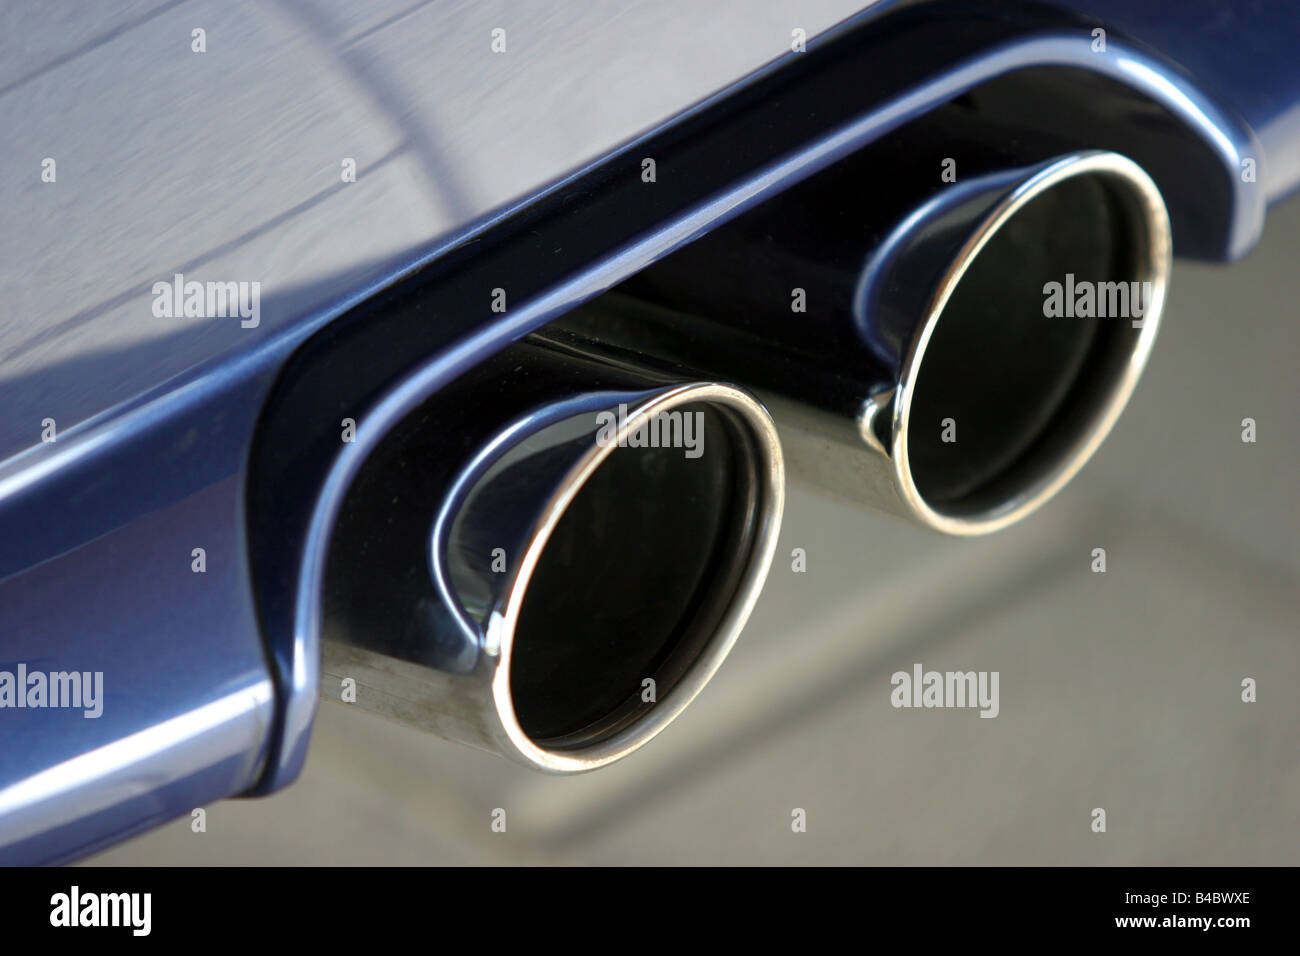 Voiture, BMW Alpina B7, Limousine, roadster, bleu, l'année de modèle 2004-, échappement, affichage détaillé, la technique/accessoire, accessoires, photo Banque D'Images